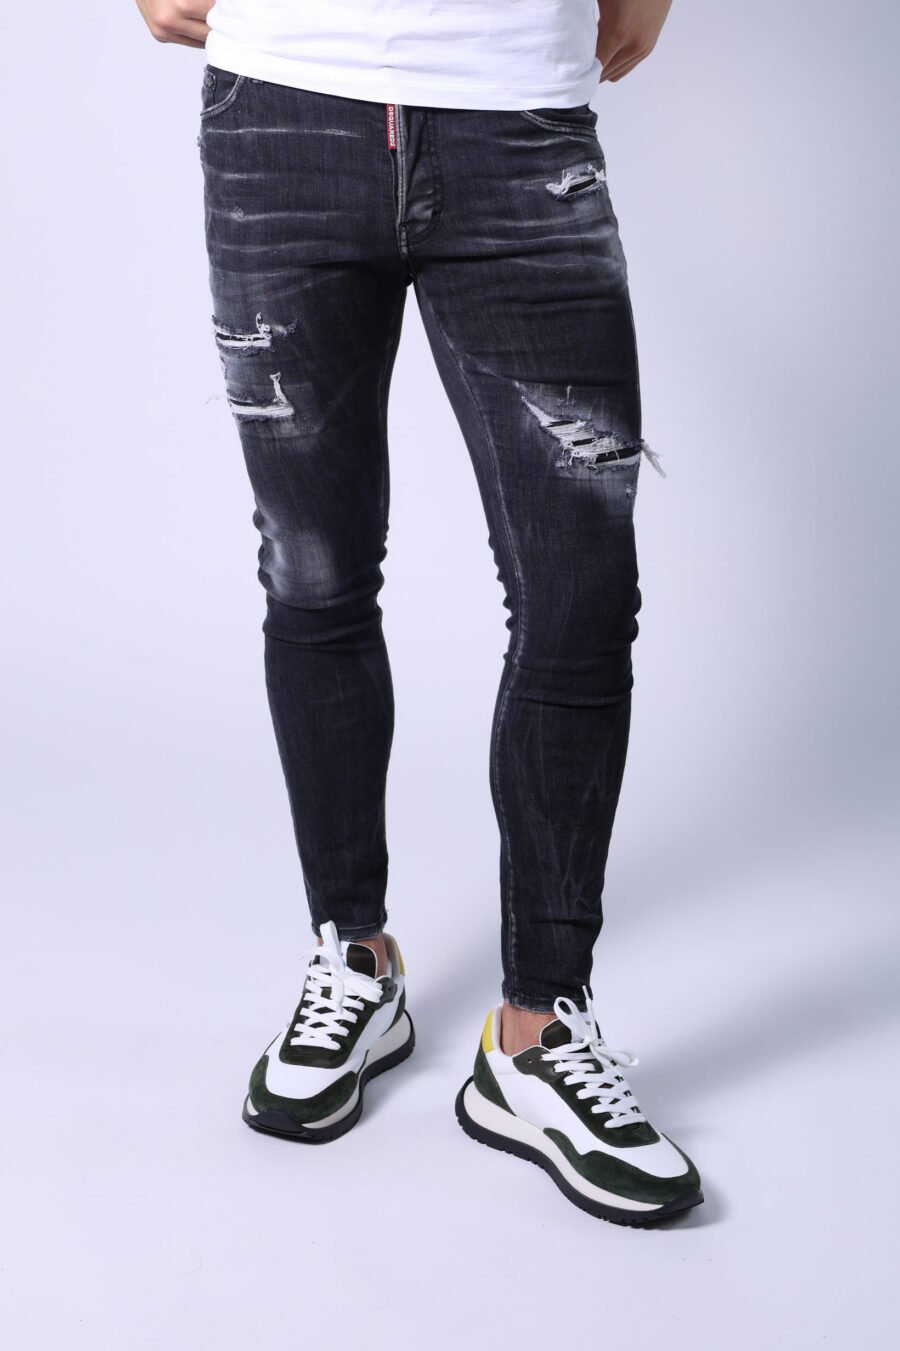 Denim trousers "super twinkey jean" black semi-worn and torn - Untitled Catalog 05316